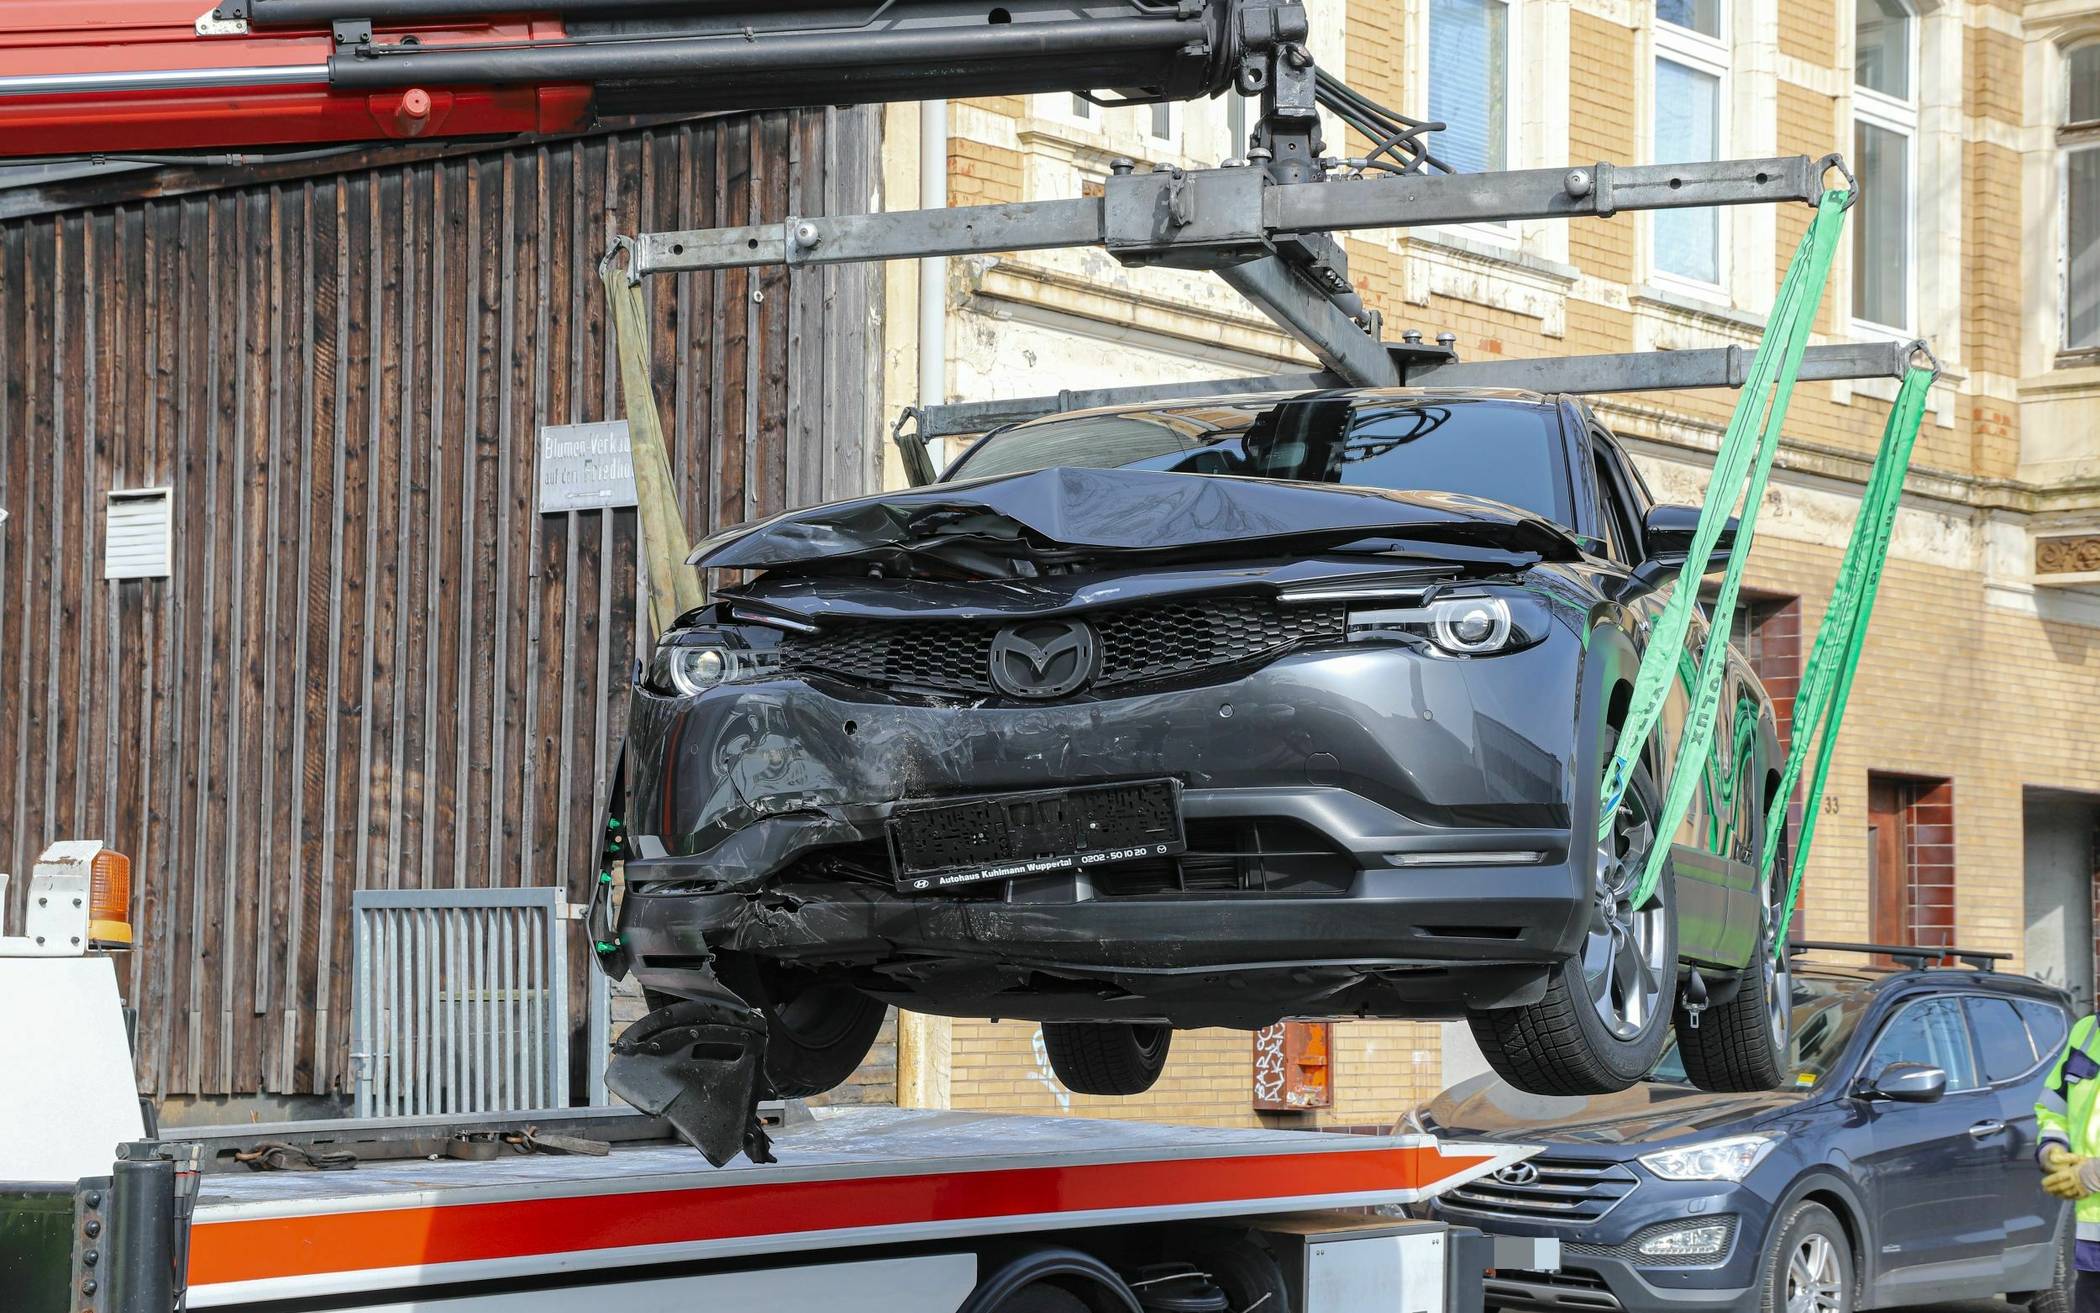 Bilder: Unfall an Ausfahrt in Wuppertal-Barmen​